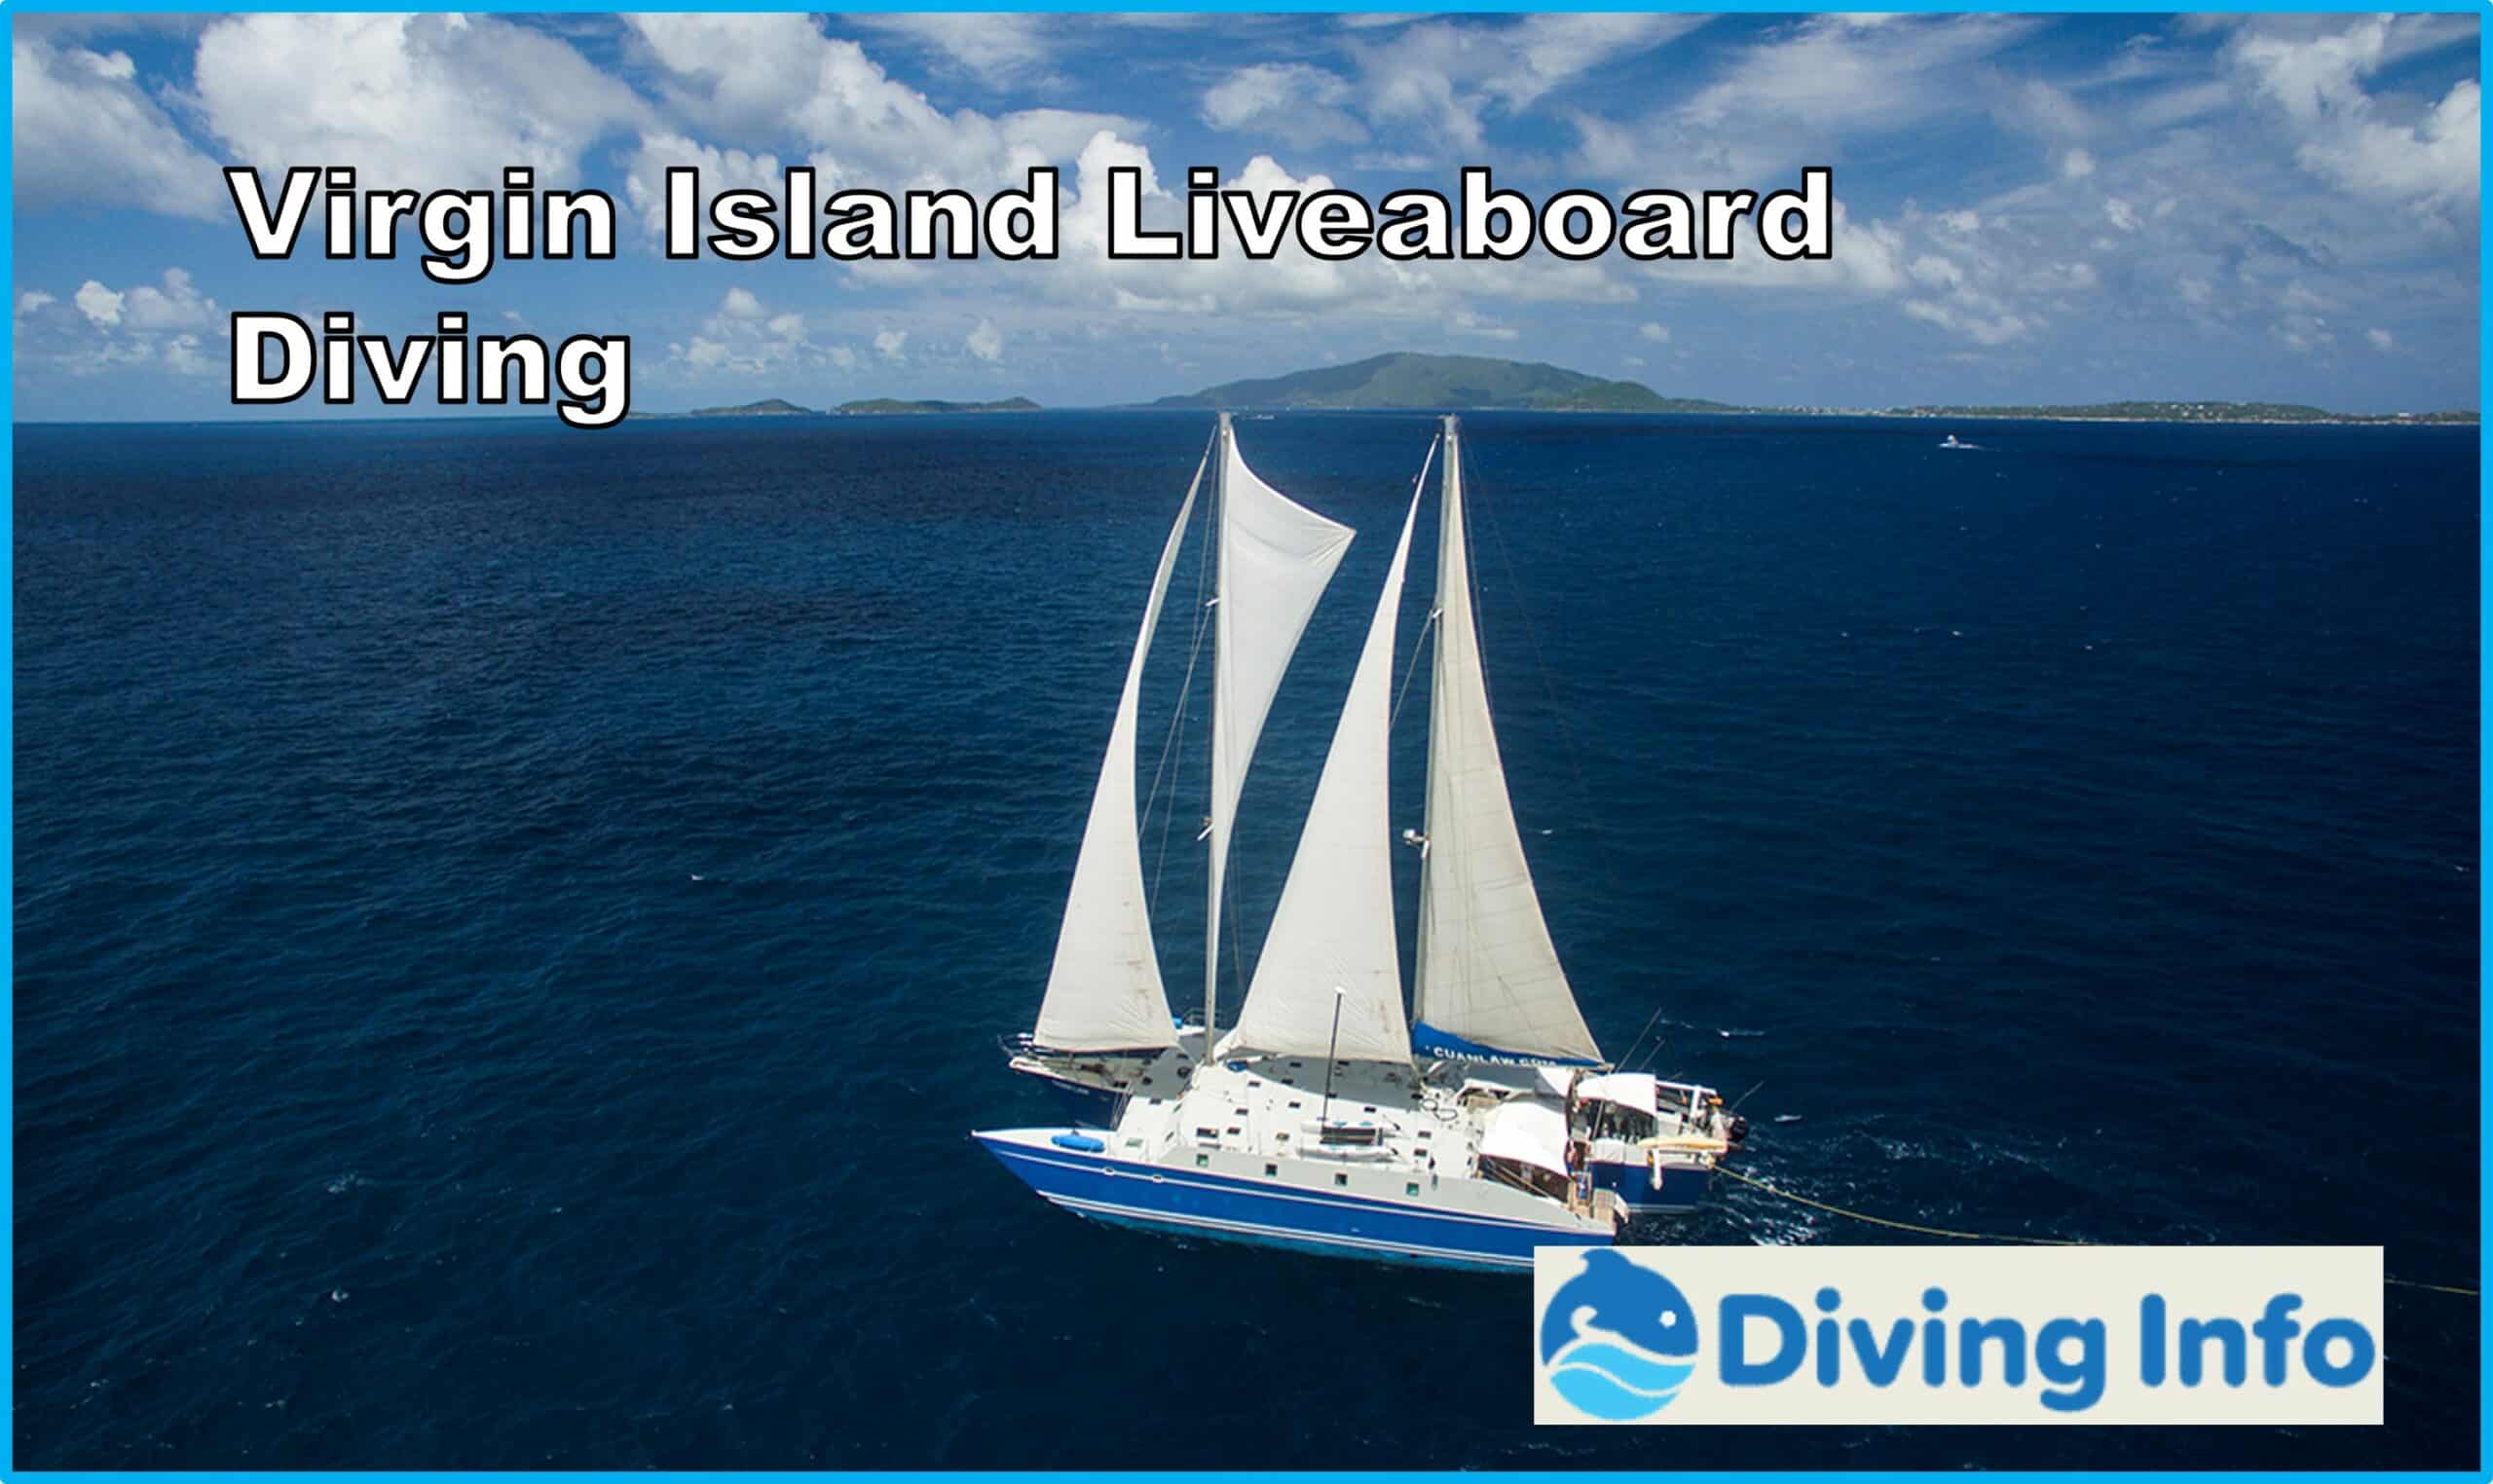 Virgin Island Liveaboard Diving